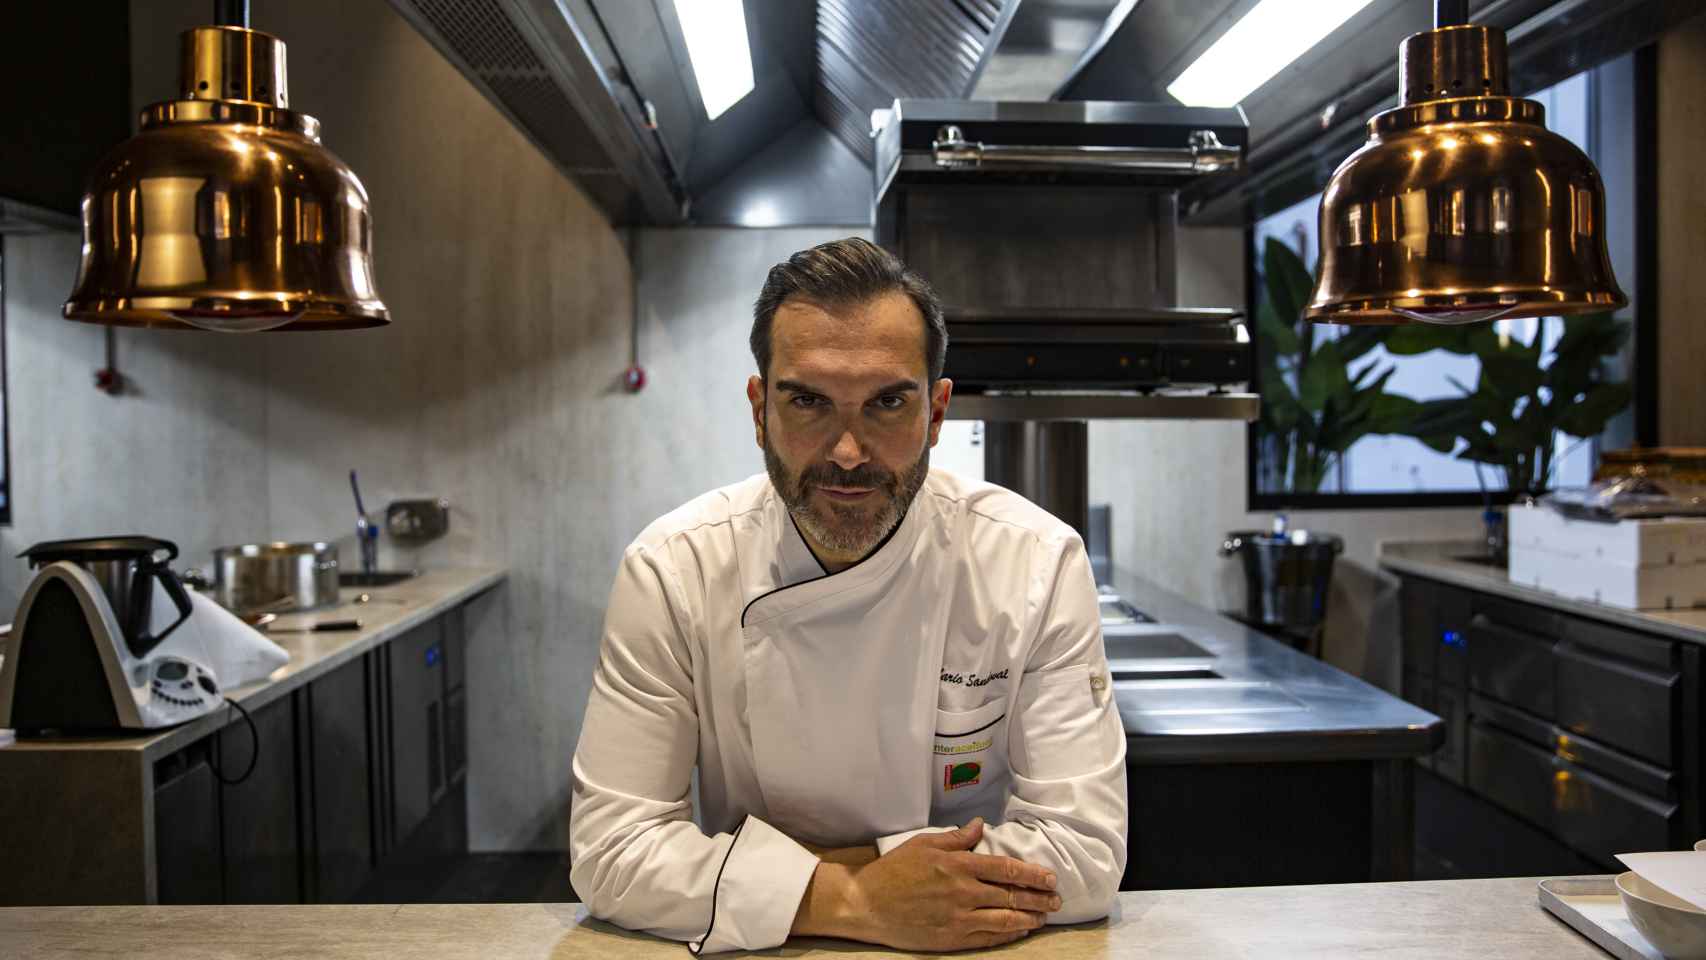 El chef Mario Sandoval:  Doy servicio al 3% de la sociedad. Yo mantengo la excelencia culinaria 